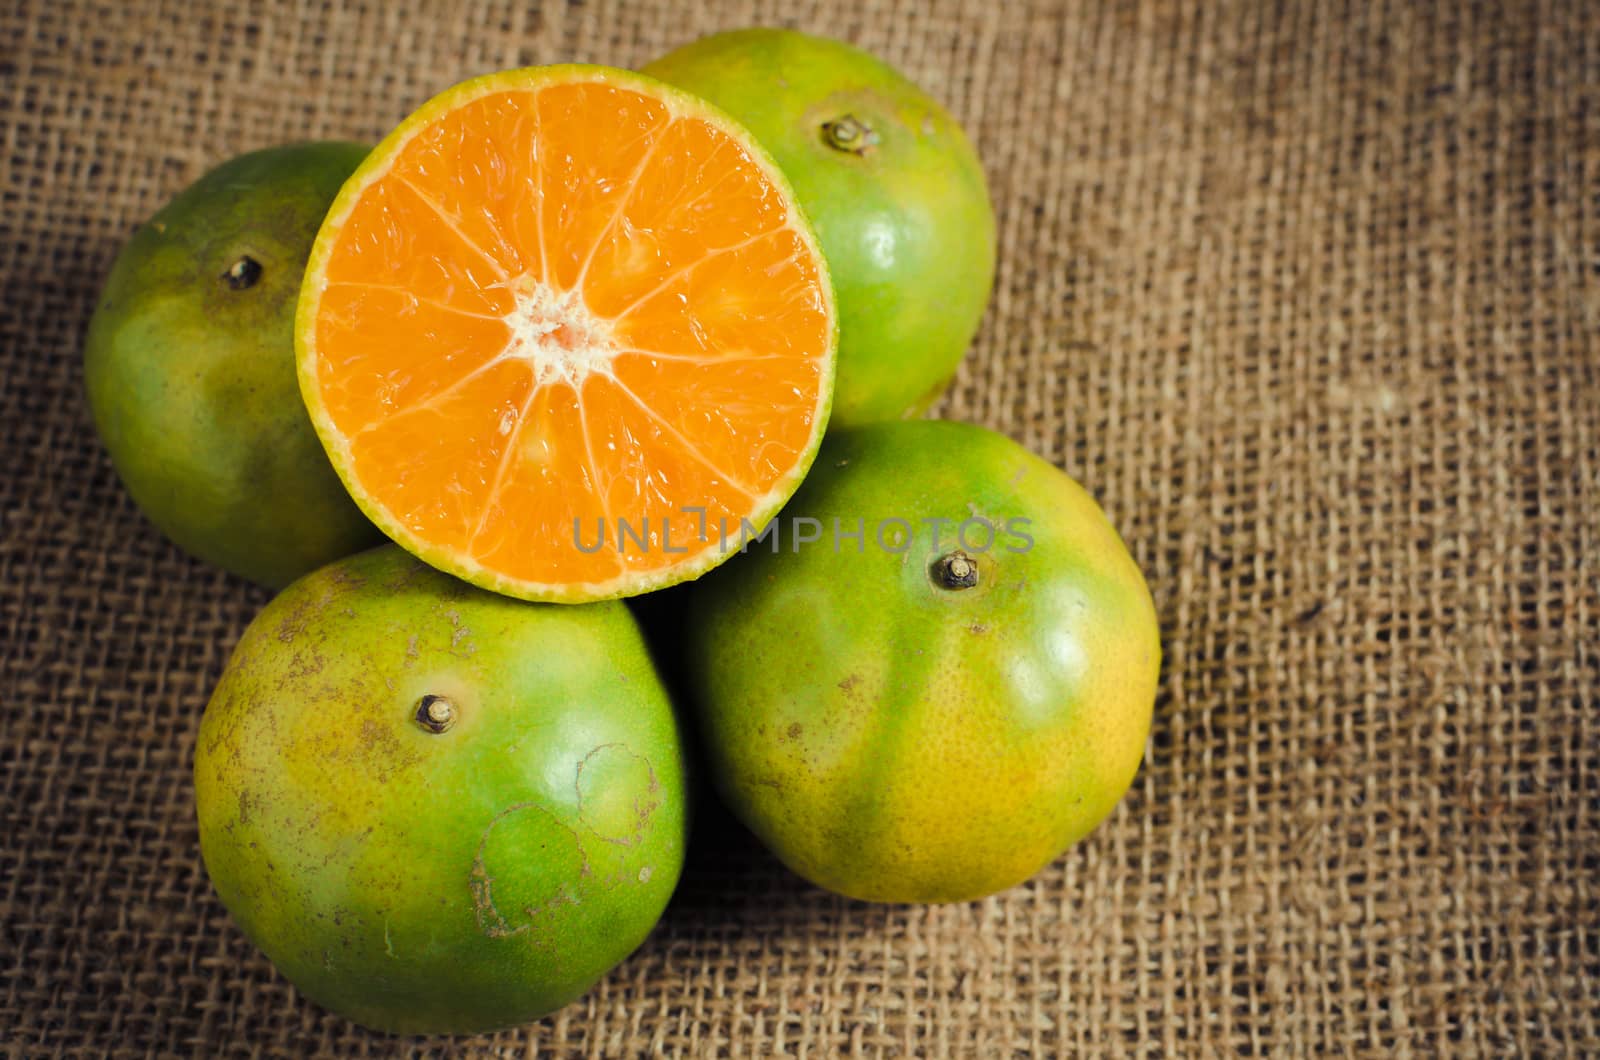 mandarin orange,Tangerines, sweet green thai orange on natural l by nop16